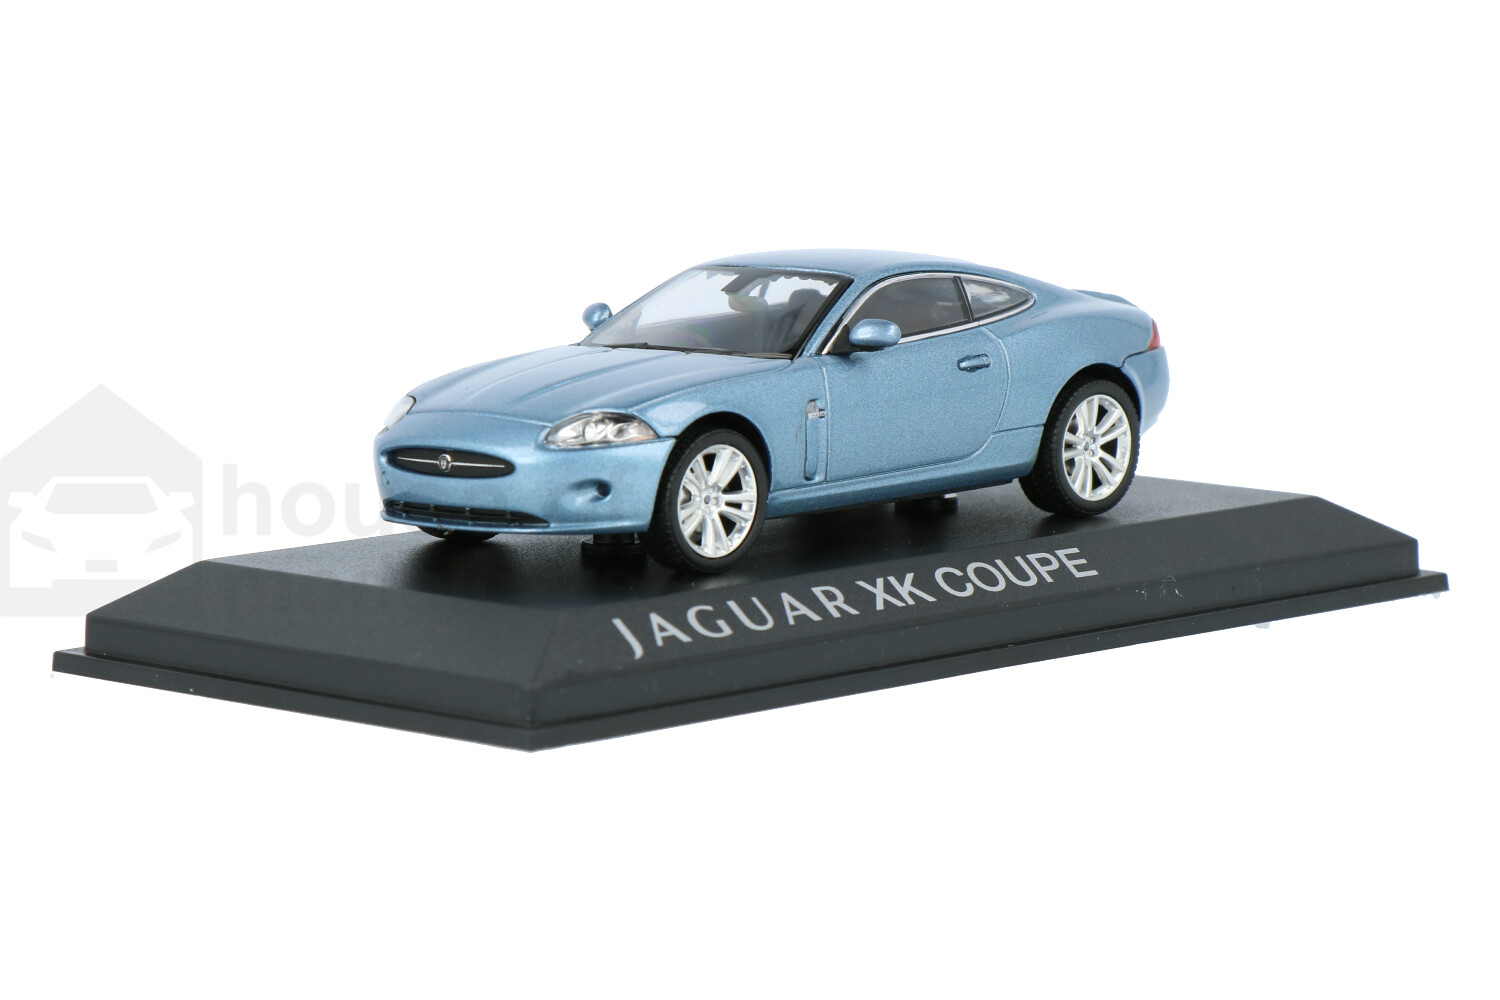 Jaguar-XK-Coupe-270020_13153551092700202-NorevJaguar-XK-Coupe-270020_Houseofmodelcars_.jpg